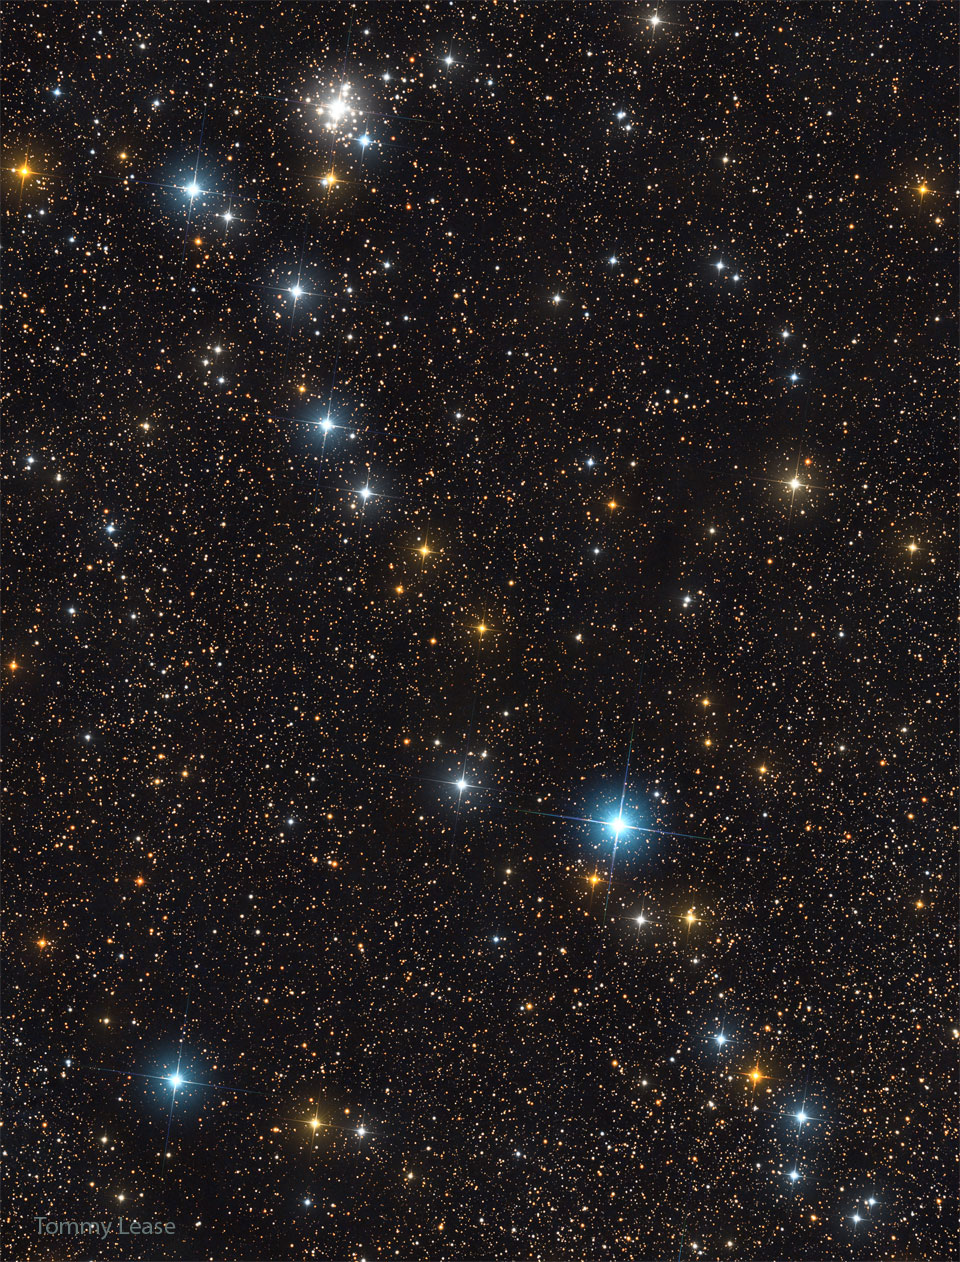 Prezentowane zdjęcie ukazuje linię jasnych gwiazd rozciągniętą ukośnie przez pole ciemniejszych gwiazd. W pobliżu górnej, lewej części zdjęcia widoczna jest również gromada gwiazd.
Więcej szczegółowych informacji w opisie poniżej.